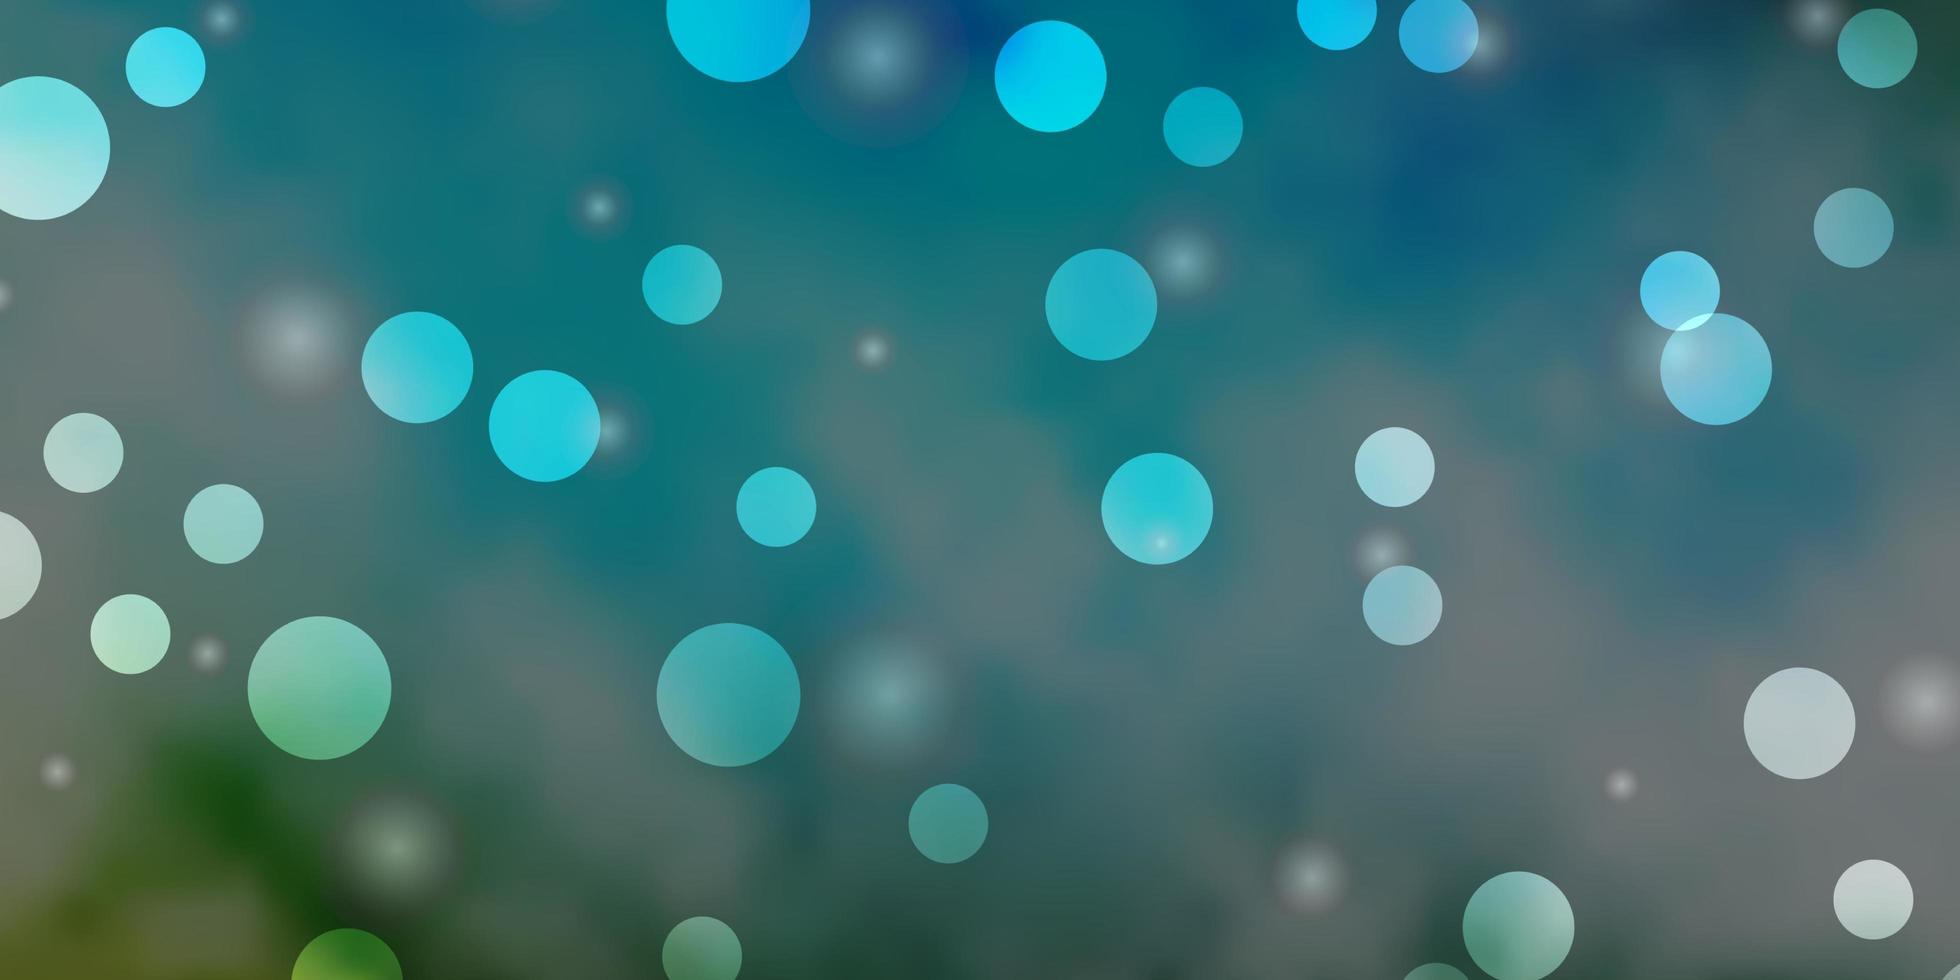 patrón de vector azul claro, verde con círculos, estrellas.